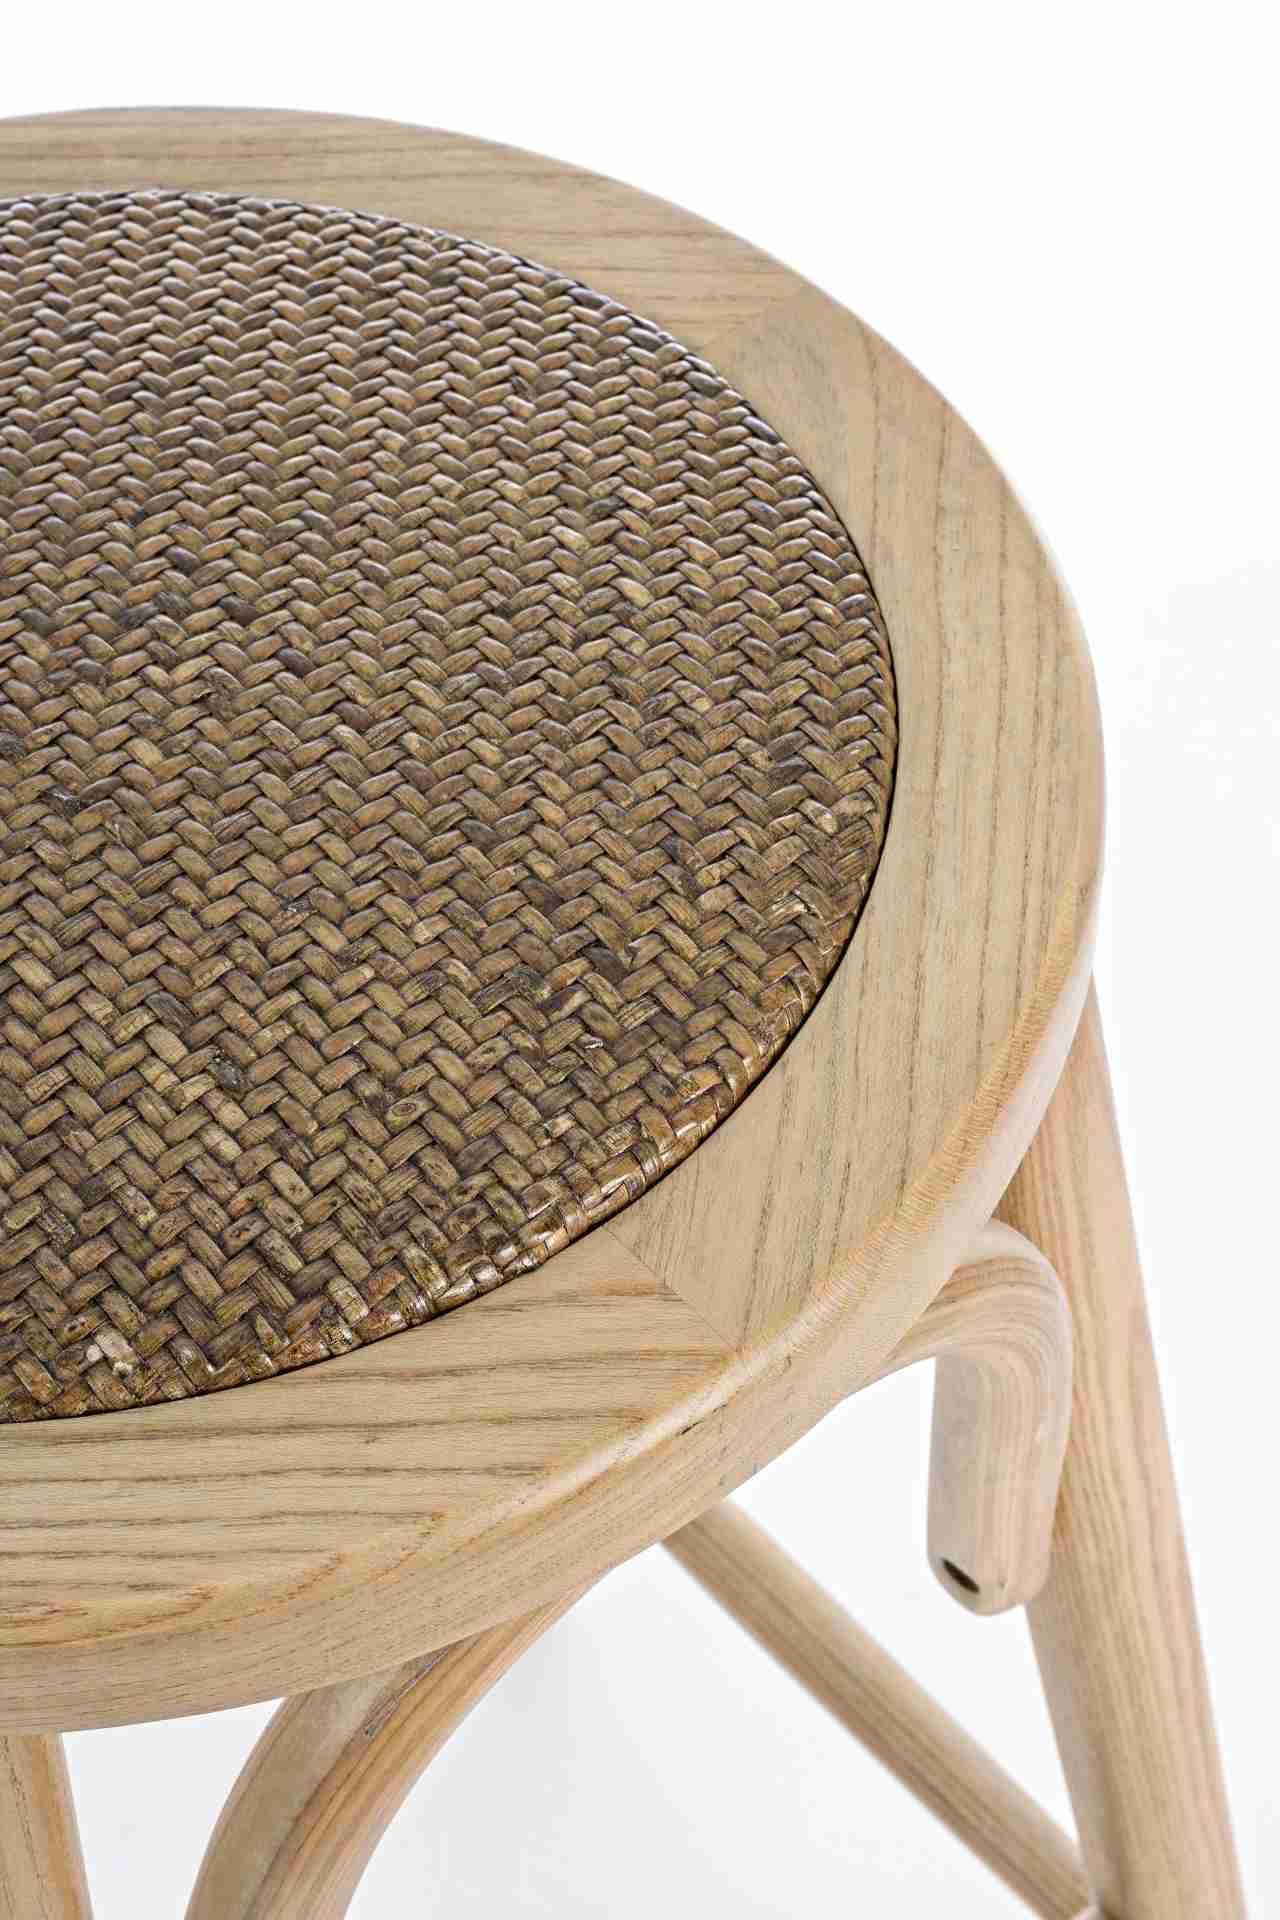 Der Barhocker Circle überzeugt mit seinem klassischen Design. Gefertigt wurde er aus Ulmenholz, welches einen natürlichen Farbton besitzt. Die Sitzfläche ist aus natürlichem Ratten Geflecht. Die Sitzhöhe des Hockers beträgt 73 cm.